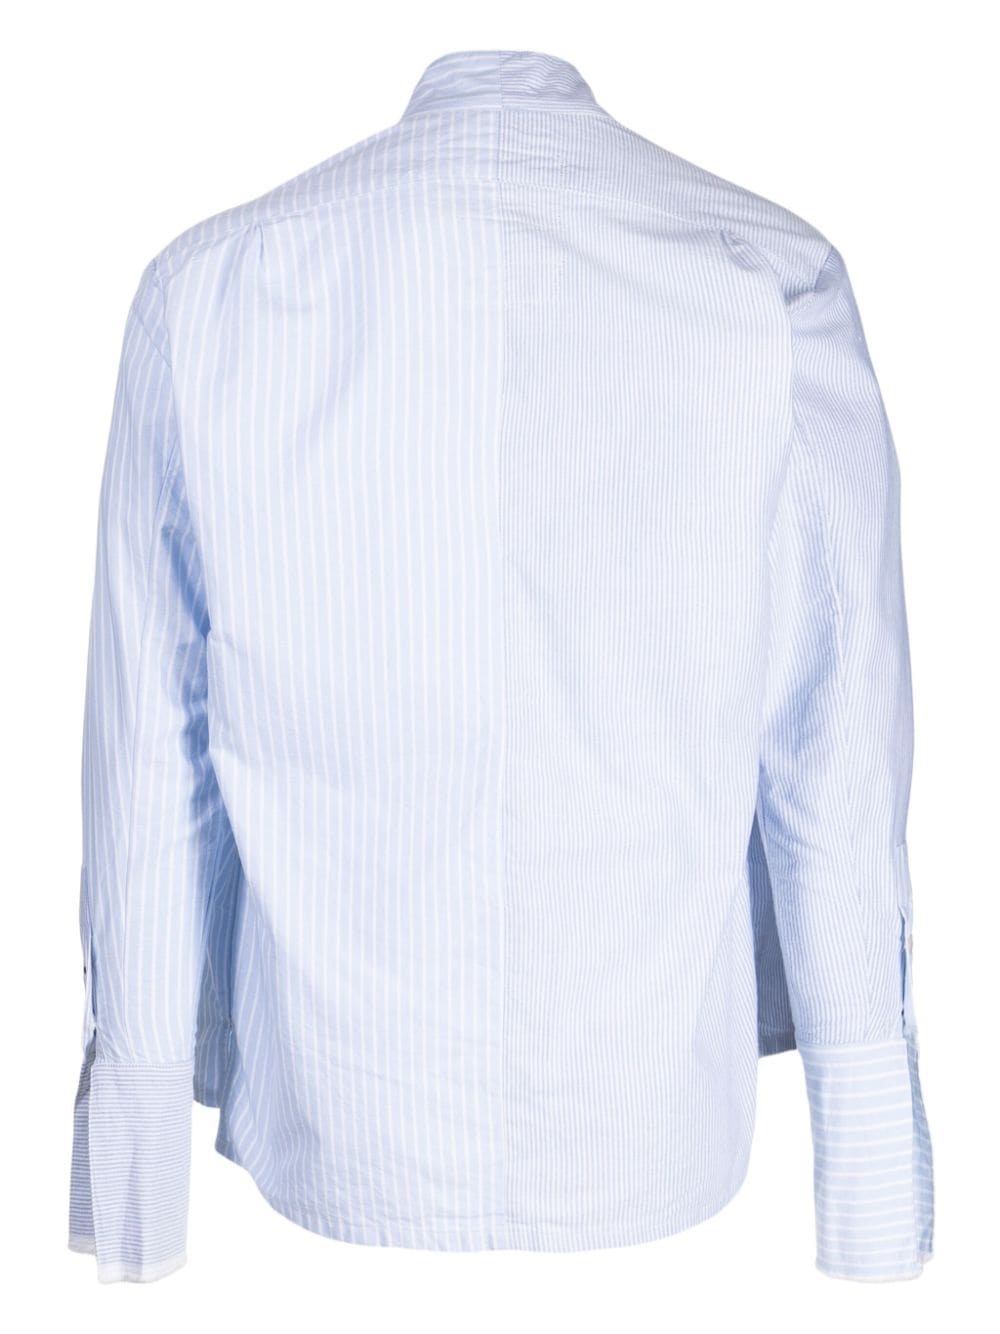 x Tommy Hilfiger striped poplin shirt - 2